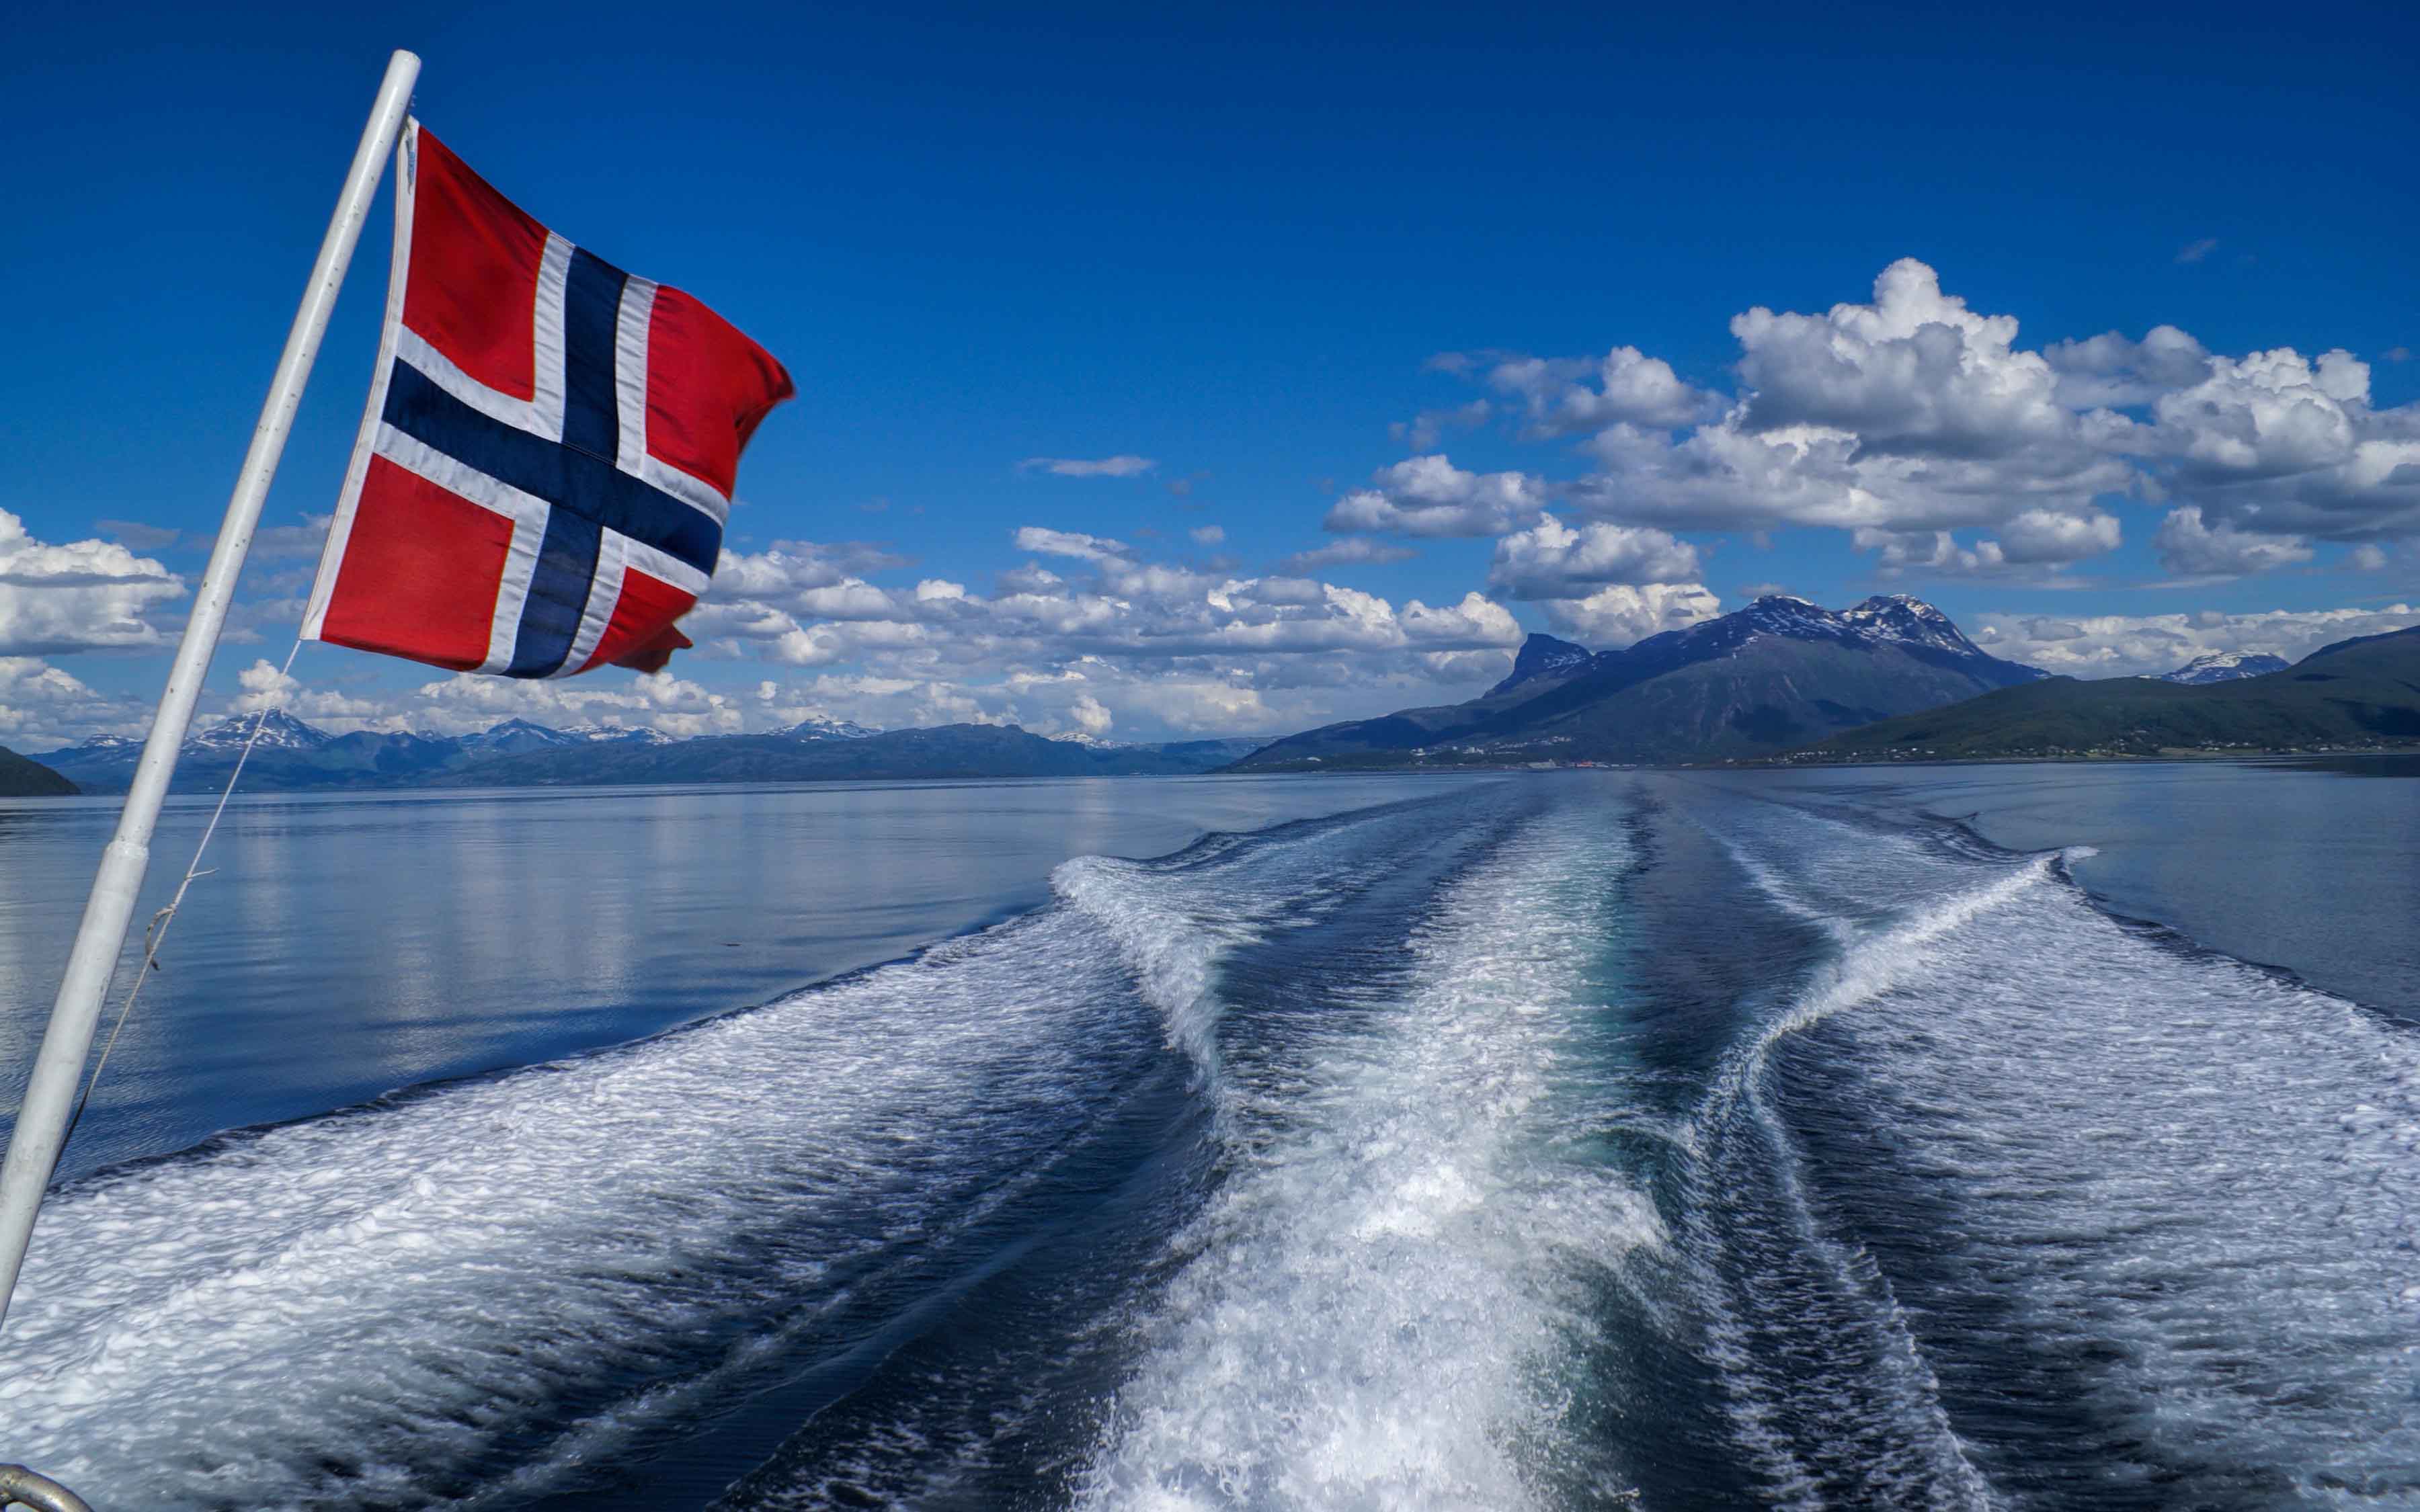 Og så videre permeabilitet Vejfremstillingsproces Rejser til Norge - Oplev en ferie i Norge i 2023 | Bestil her »